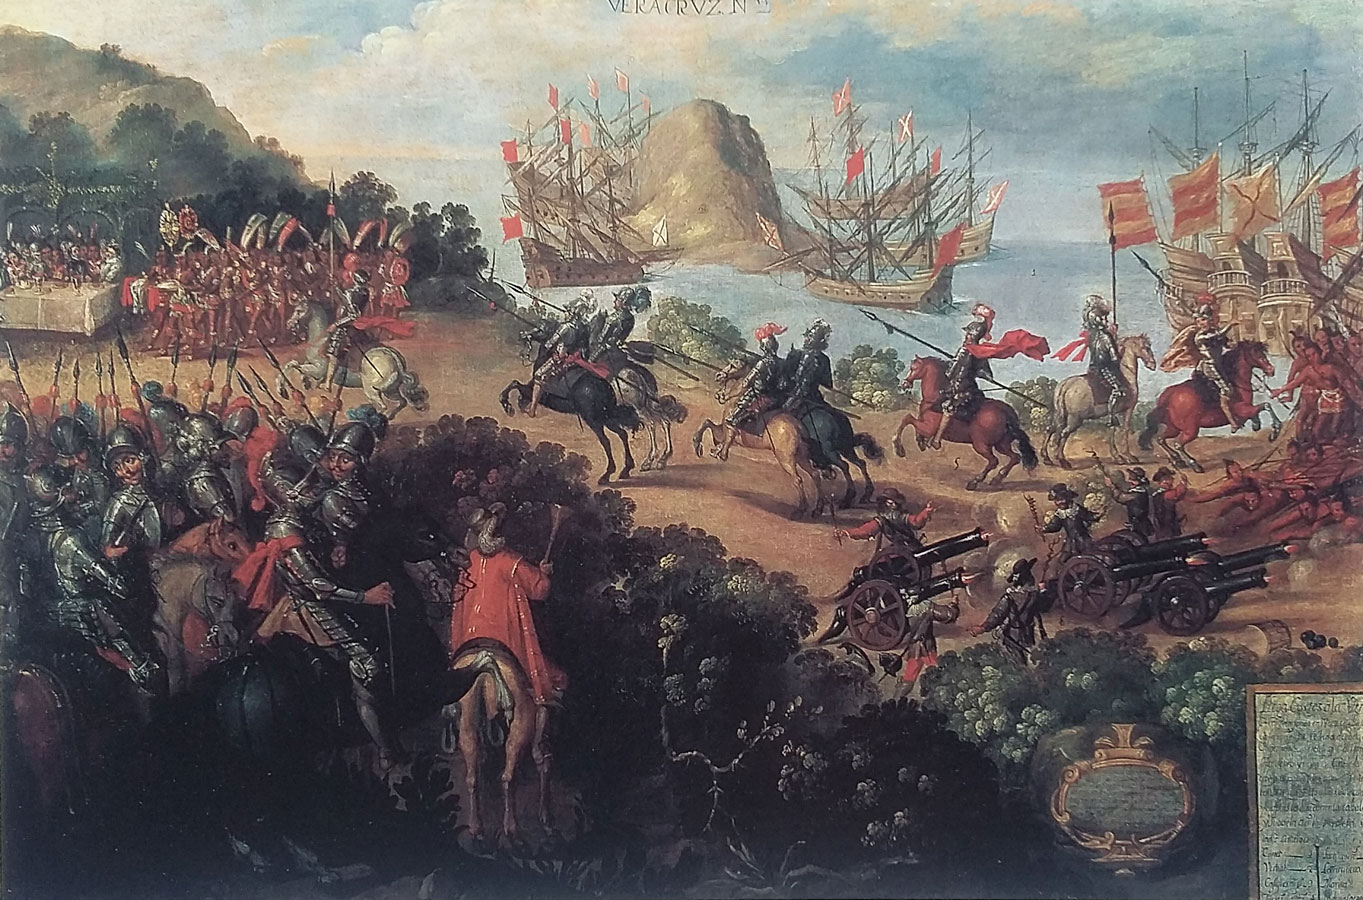 "La llegada de Cortés a Veracruz y la recepción de los embajadores de Moctezuma", Anónimo. Siglo XVII